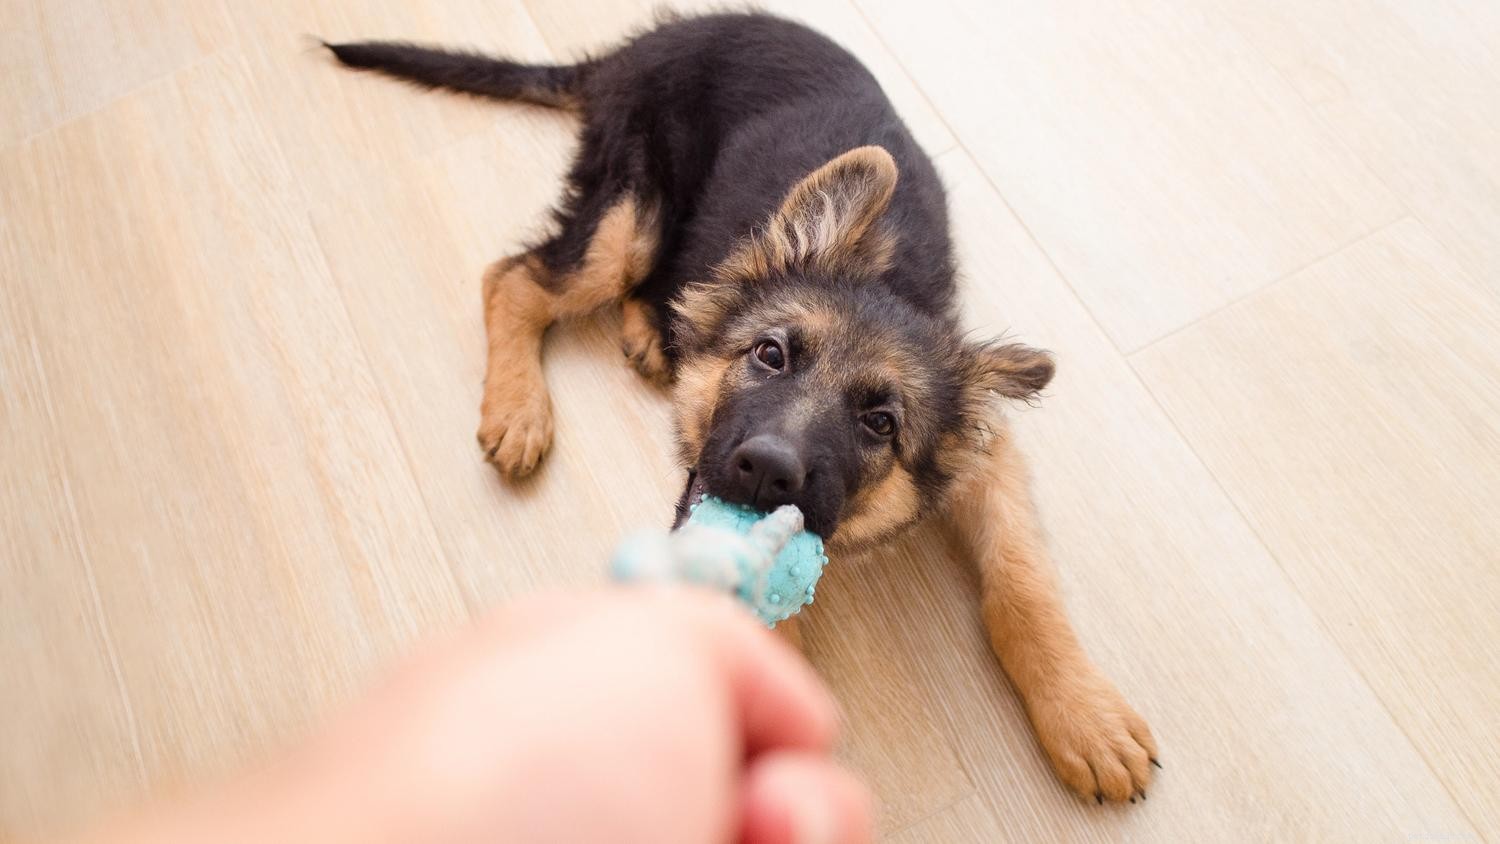 Come calmare un cane ipertestuale:9 consigli da provare